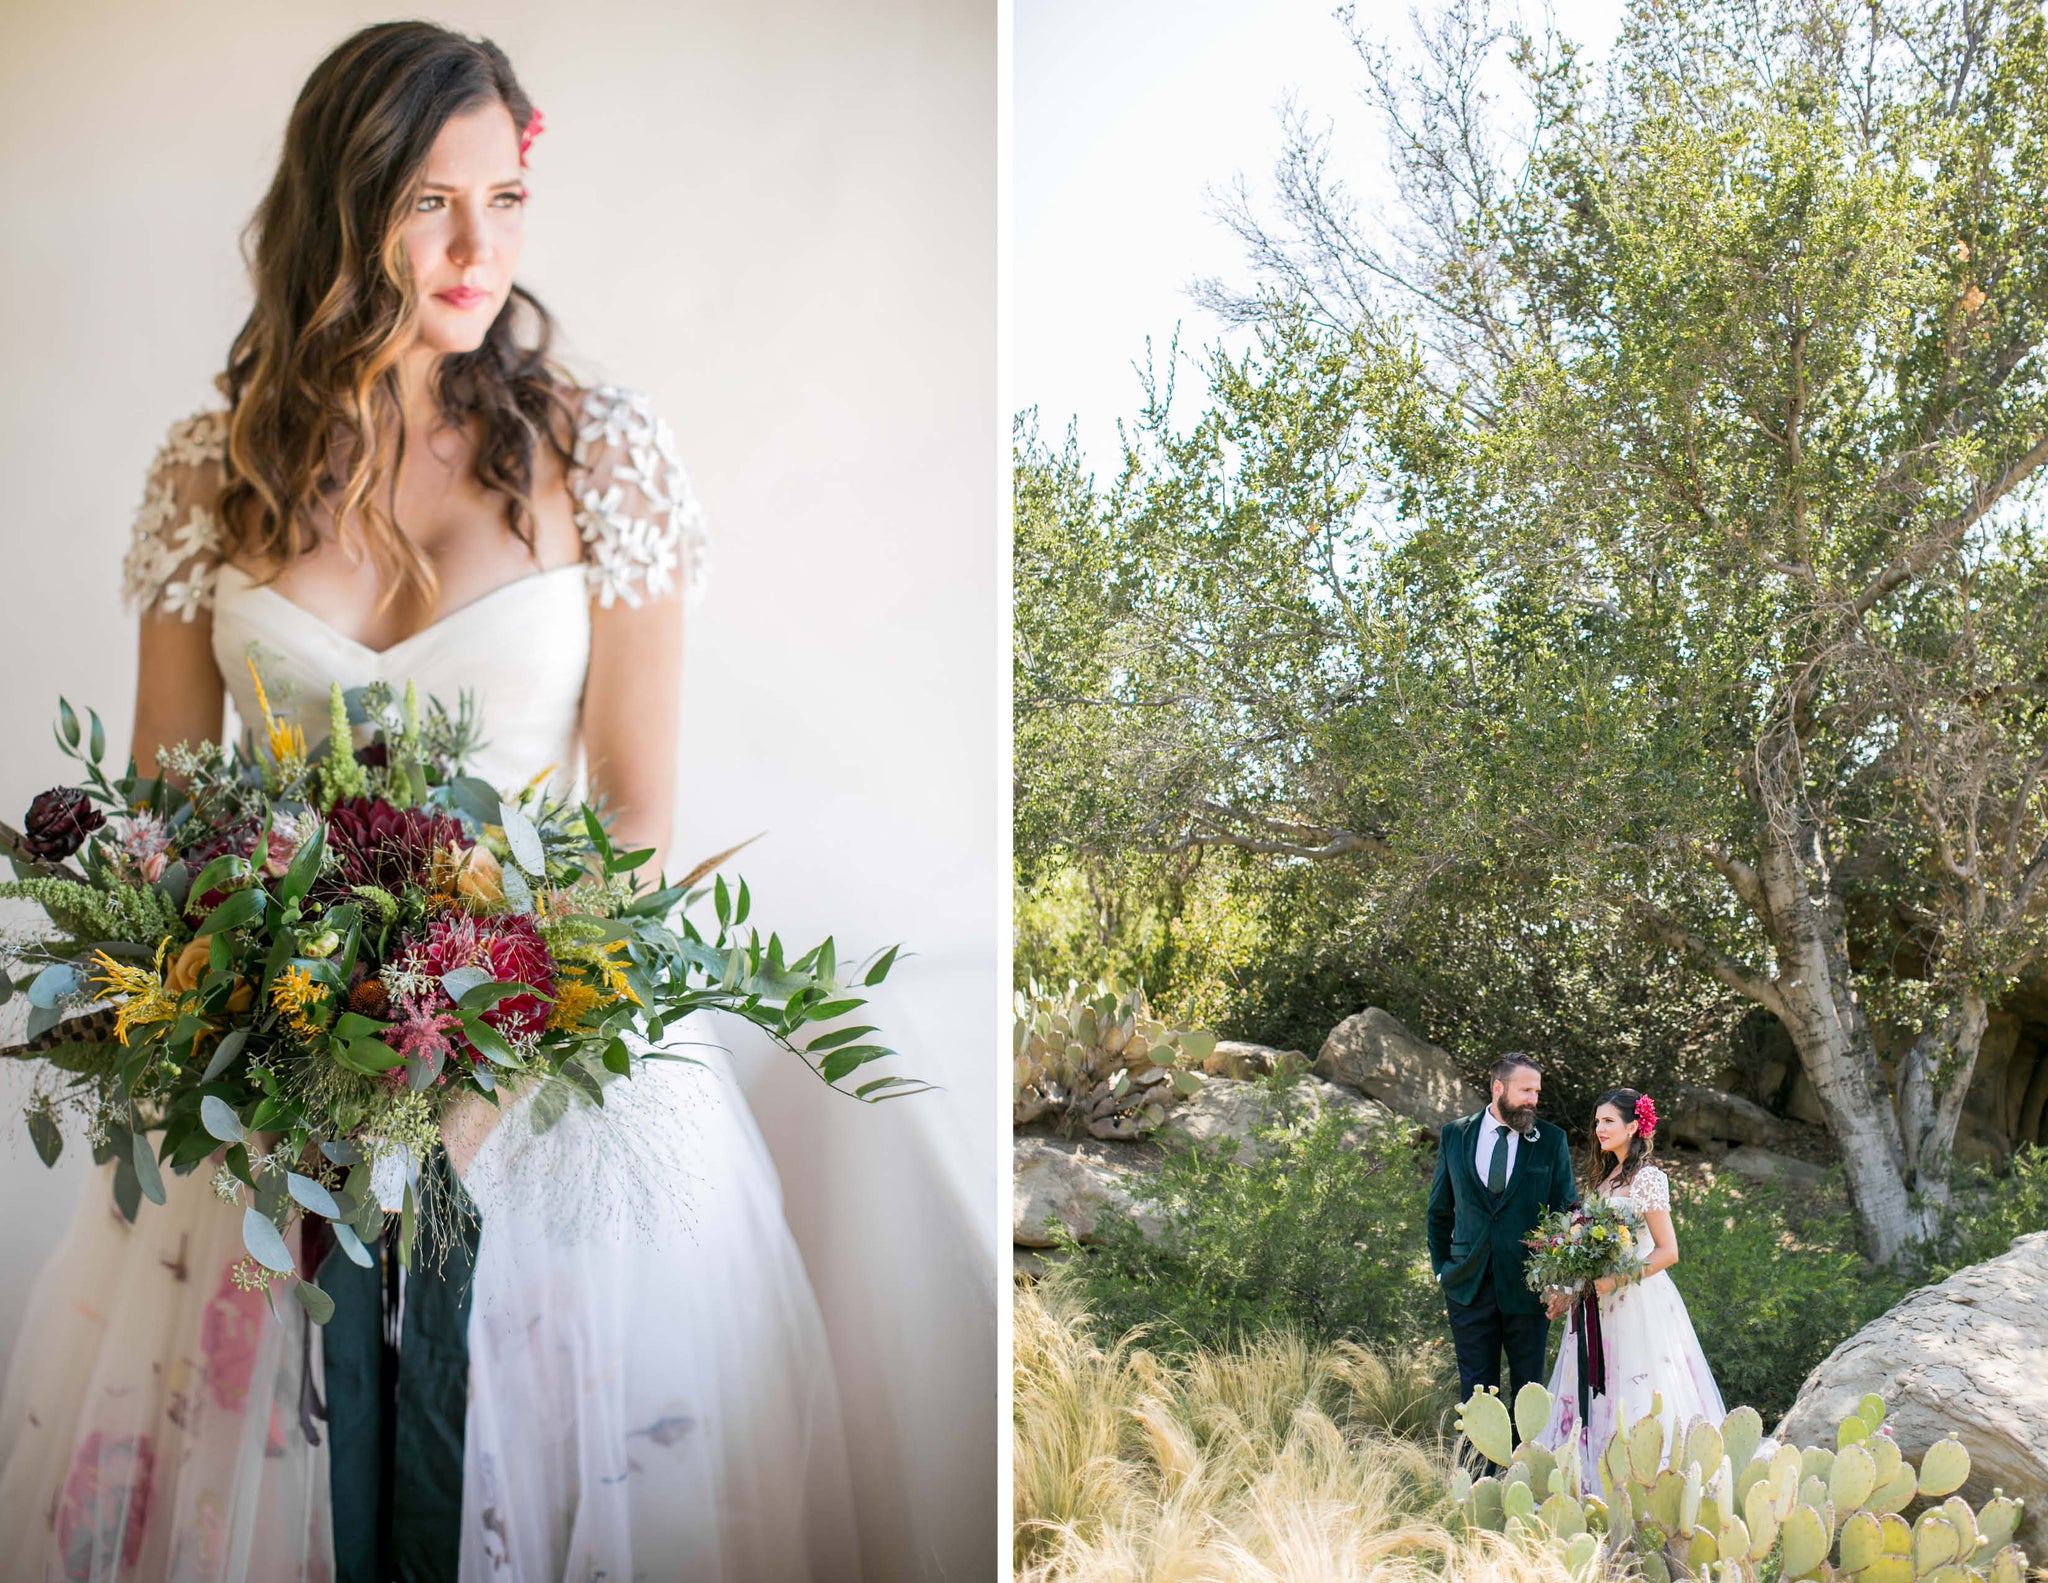  Bridal Bouquet -  Wildflora © 2017 Marisa + Mikes Wedding  